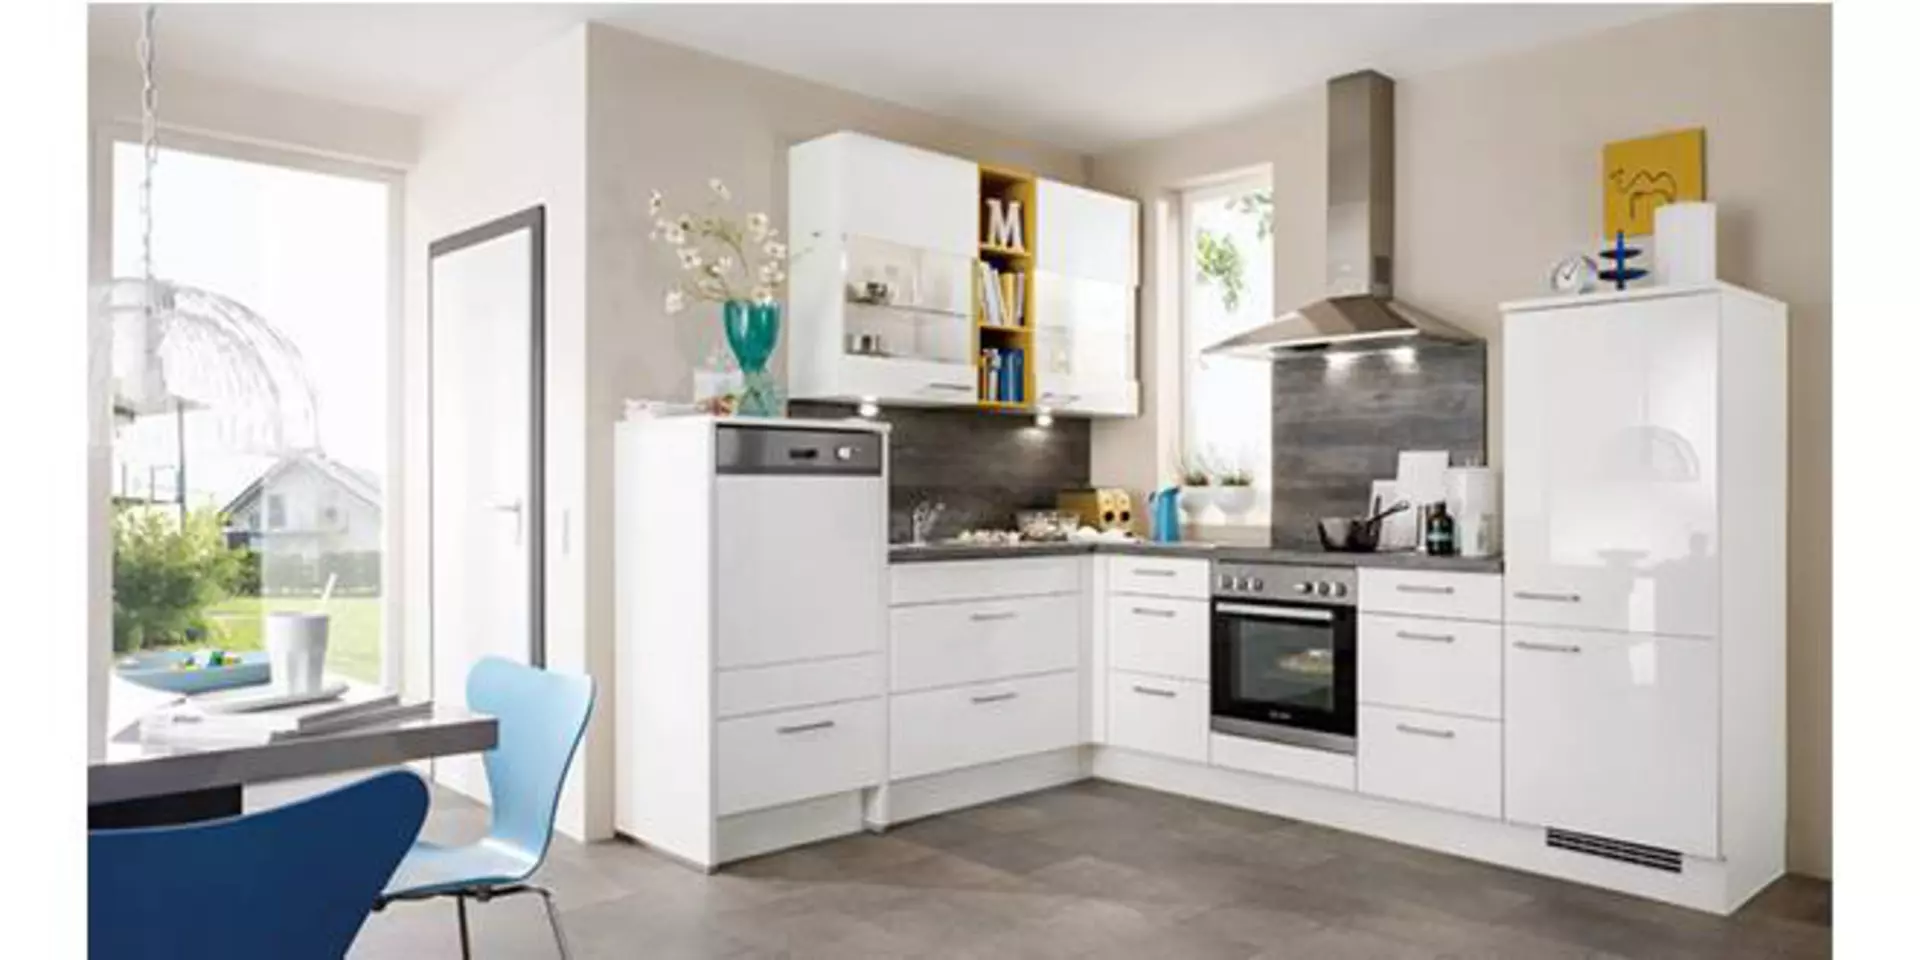 Weiße Küche in L-Form nützt perfekt die Ecke aus. Die abgebildete helle Küche mit Einbaugeräten und Hängeschränken zeigt eine mögliche Planungsküche.